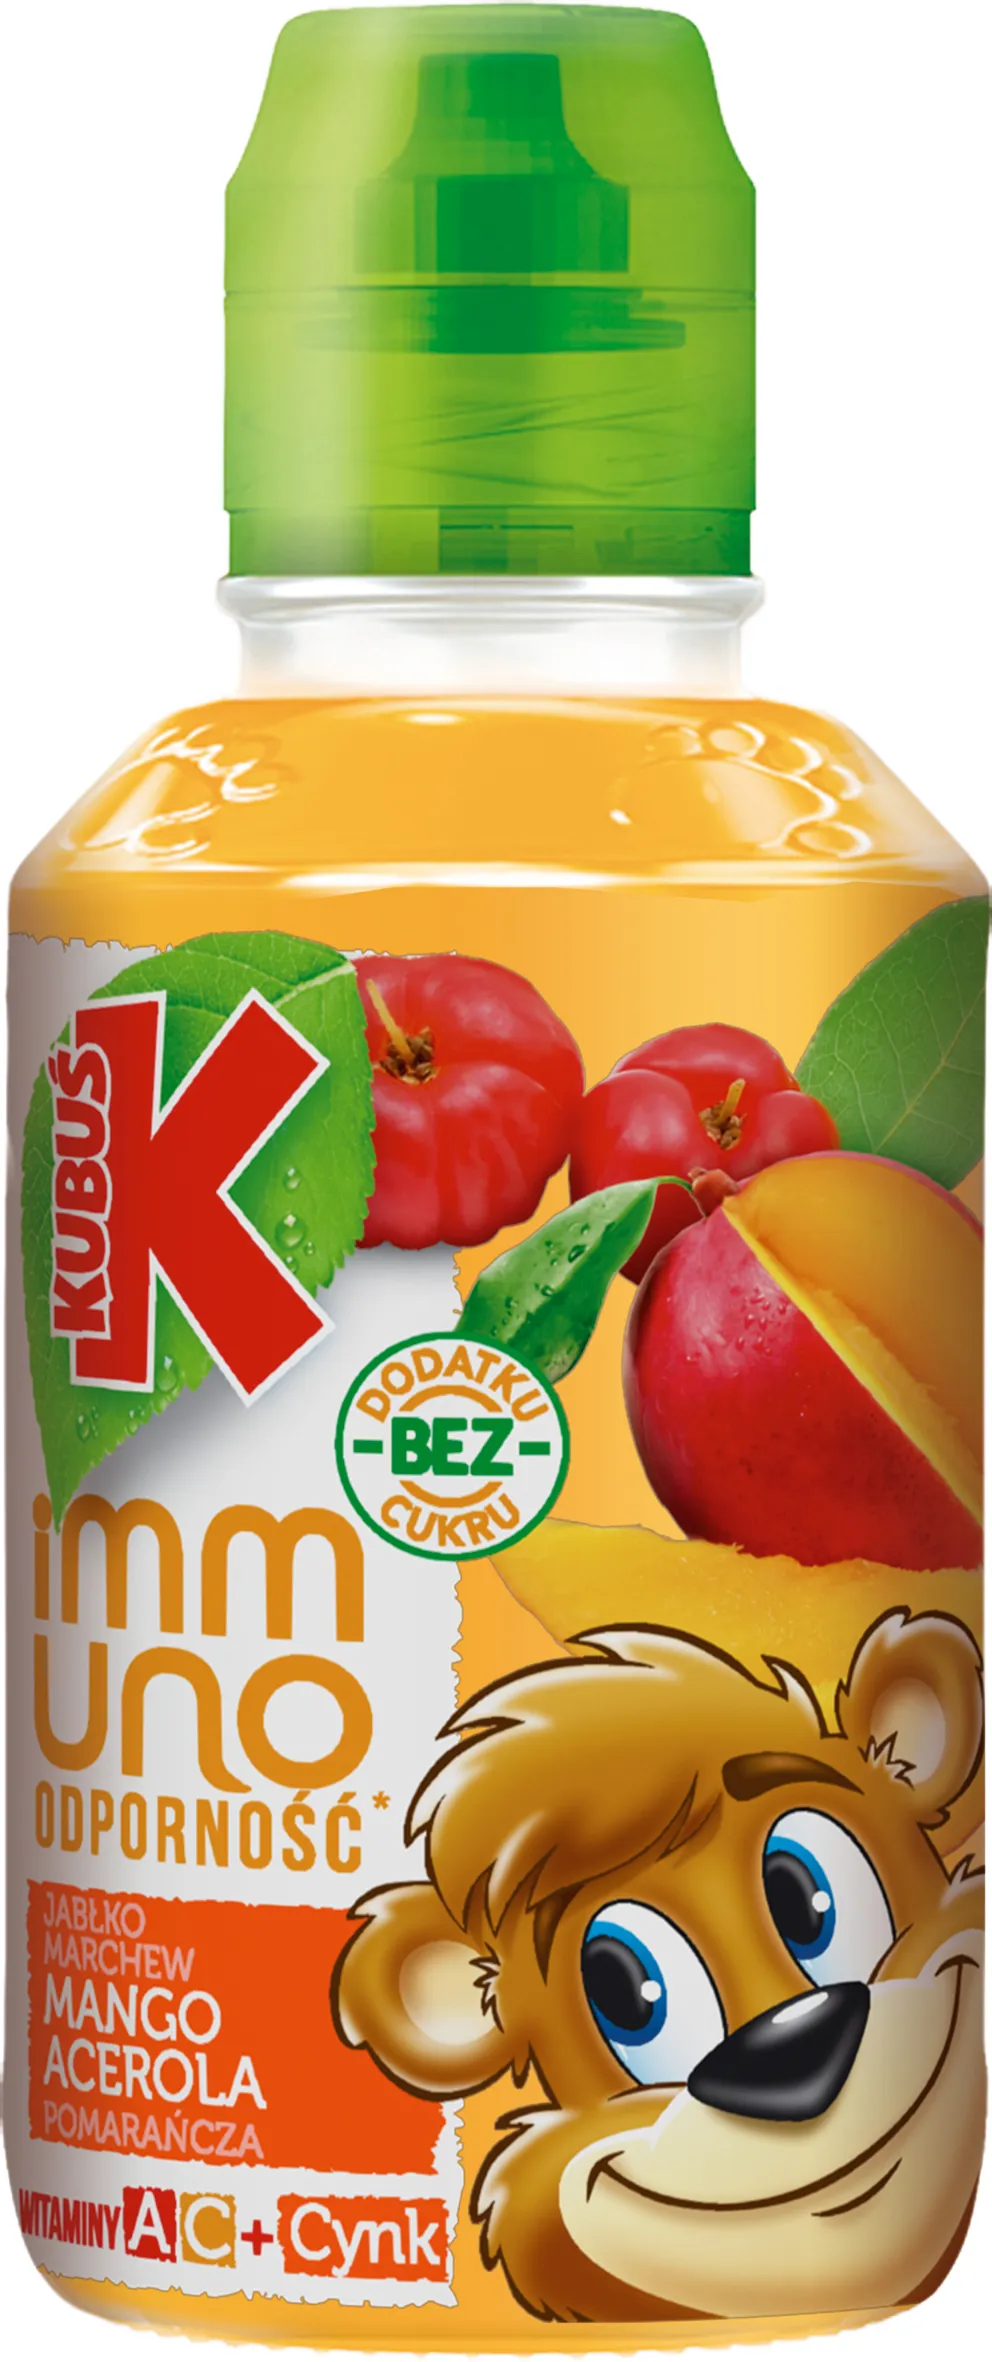 Kubuś Imunno Odporność sok dla dzieci, mango, acerola, 200 ml